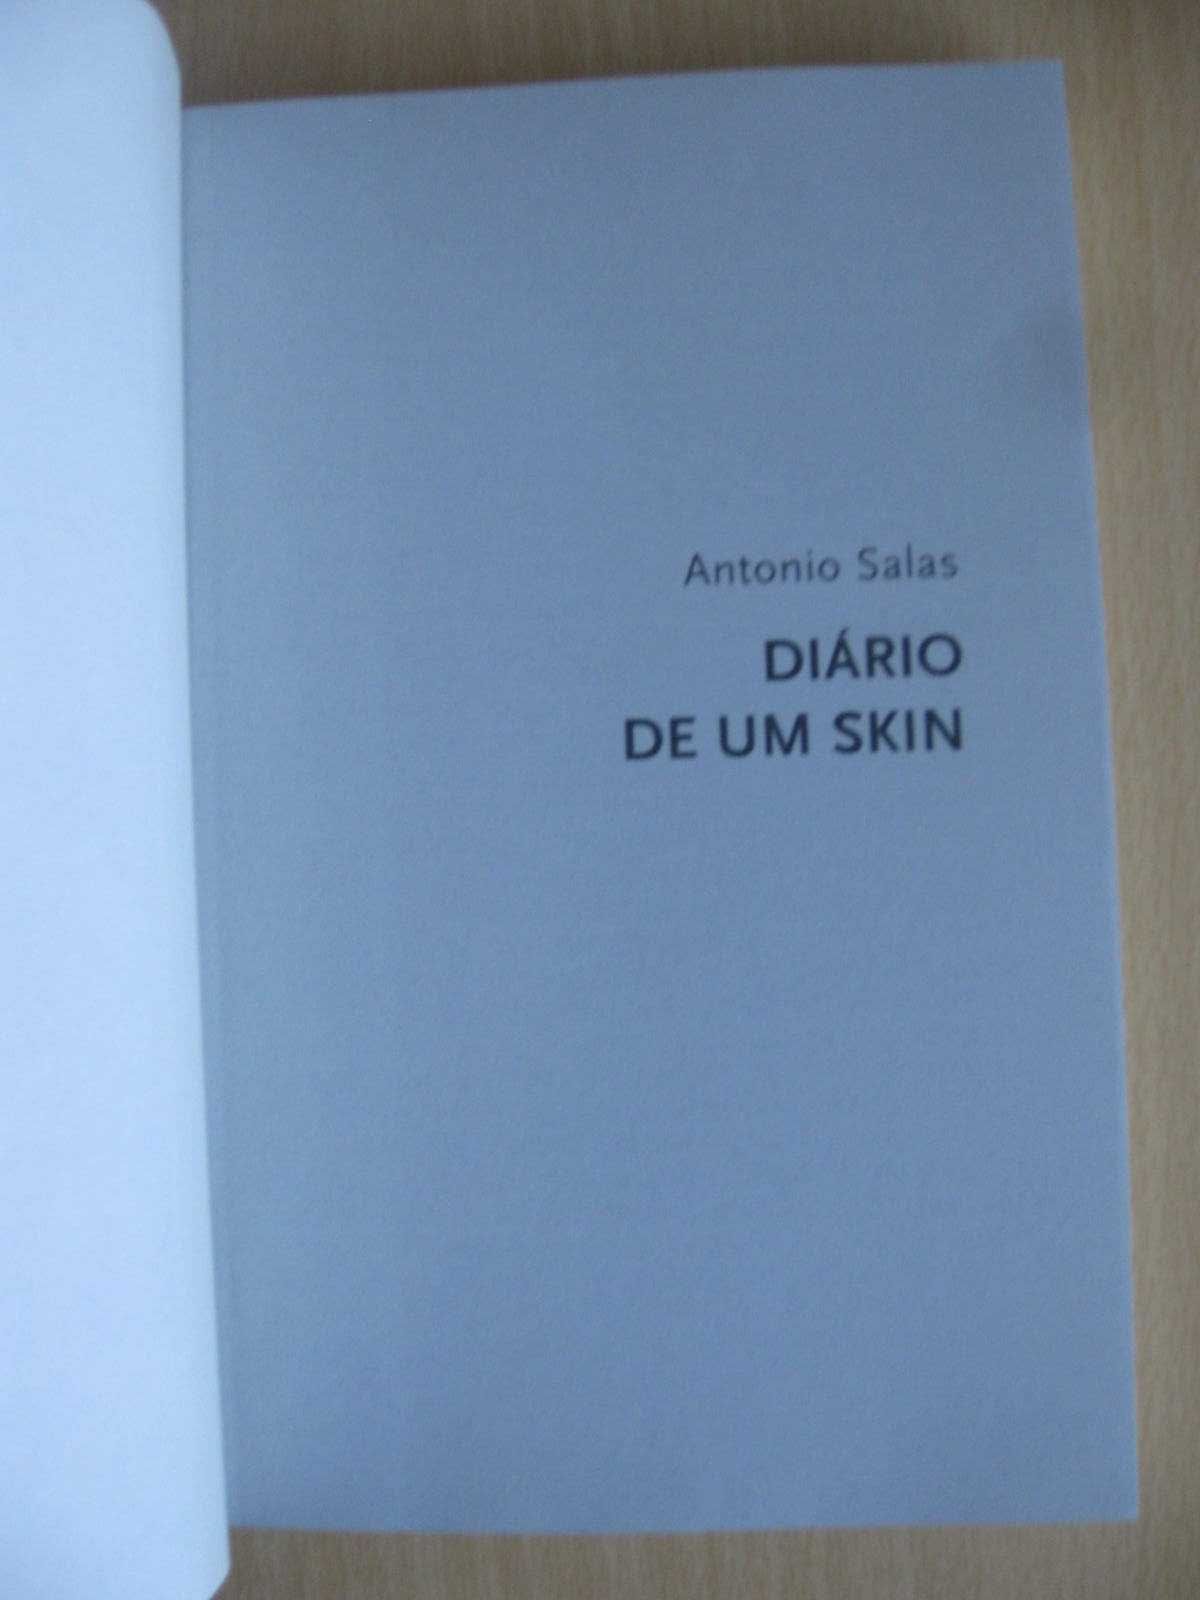 Diário de um Skin
de Antonio Salas